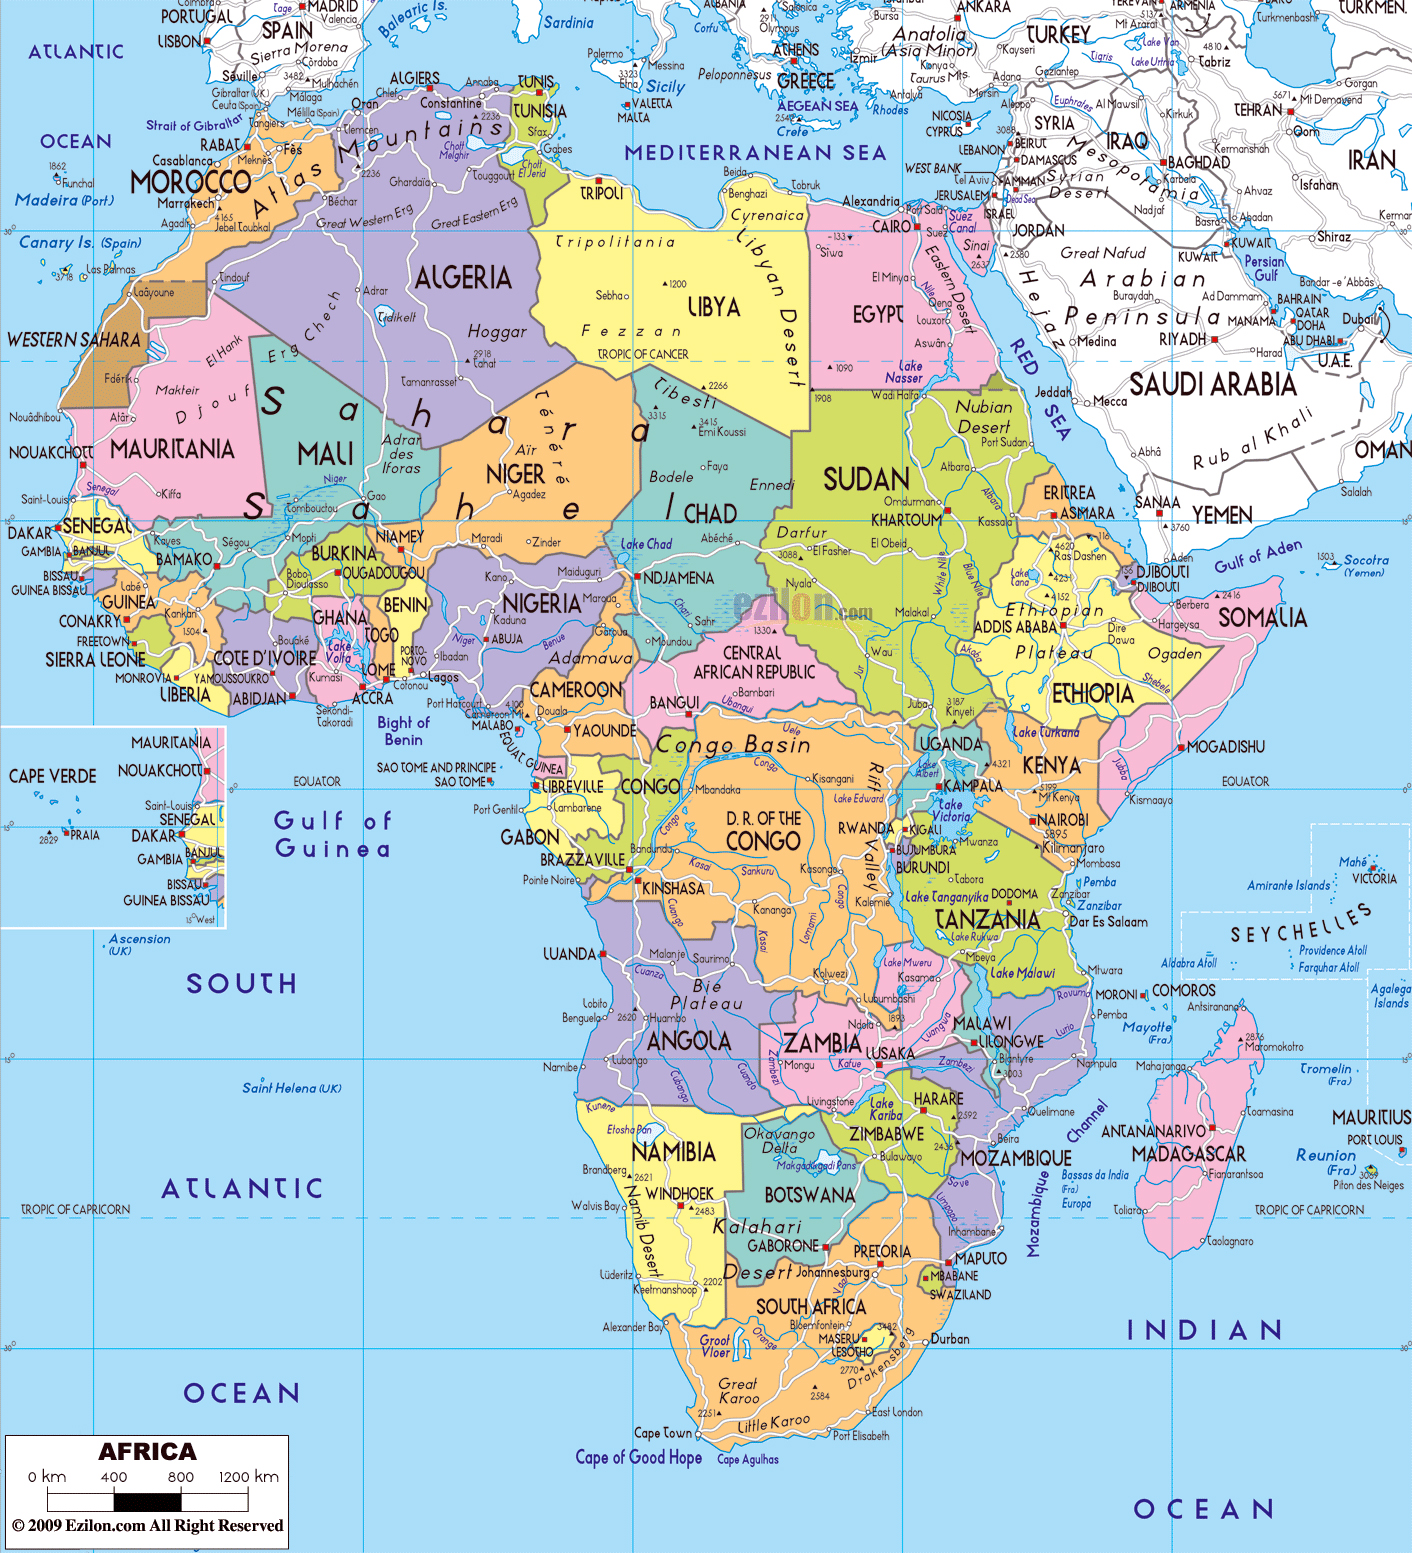 Mapa Politico De Africa Mapa De Paises Y Ciudades De Africa National Images Images And Photos 5706